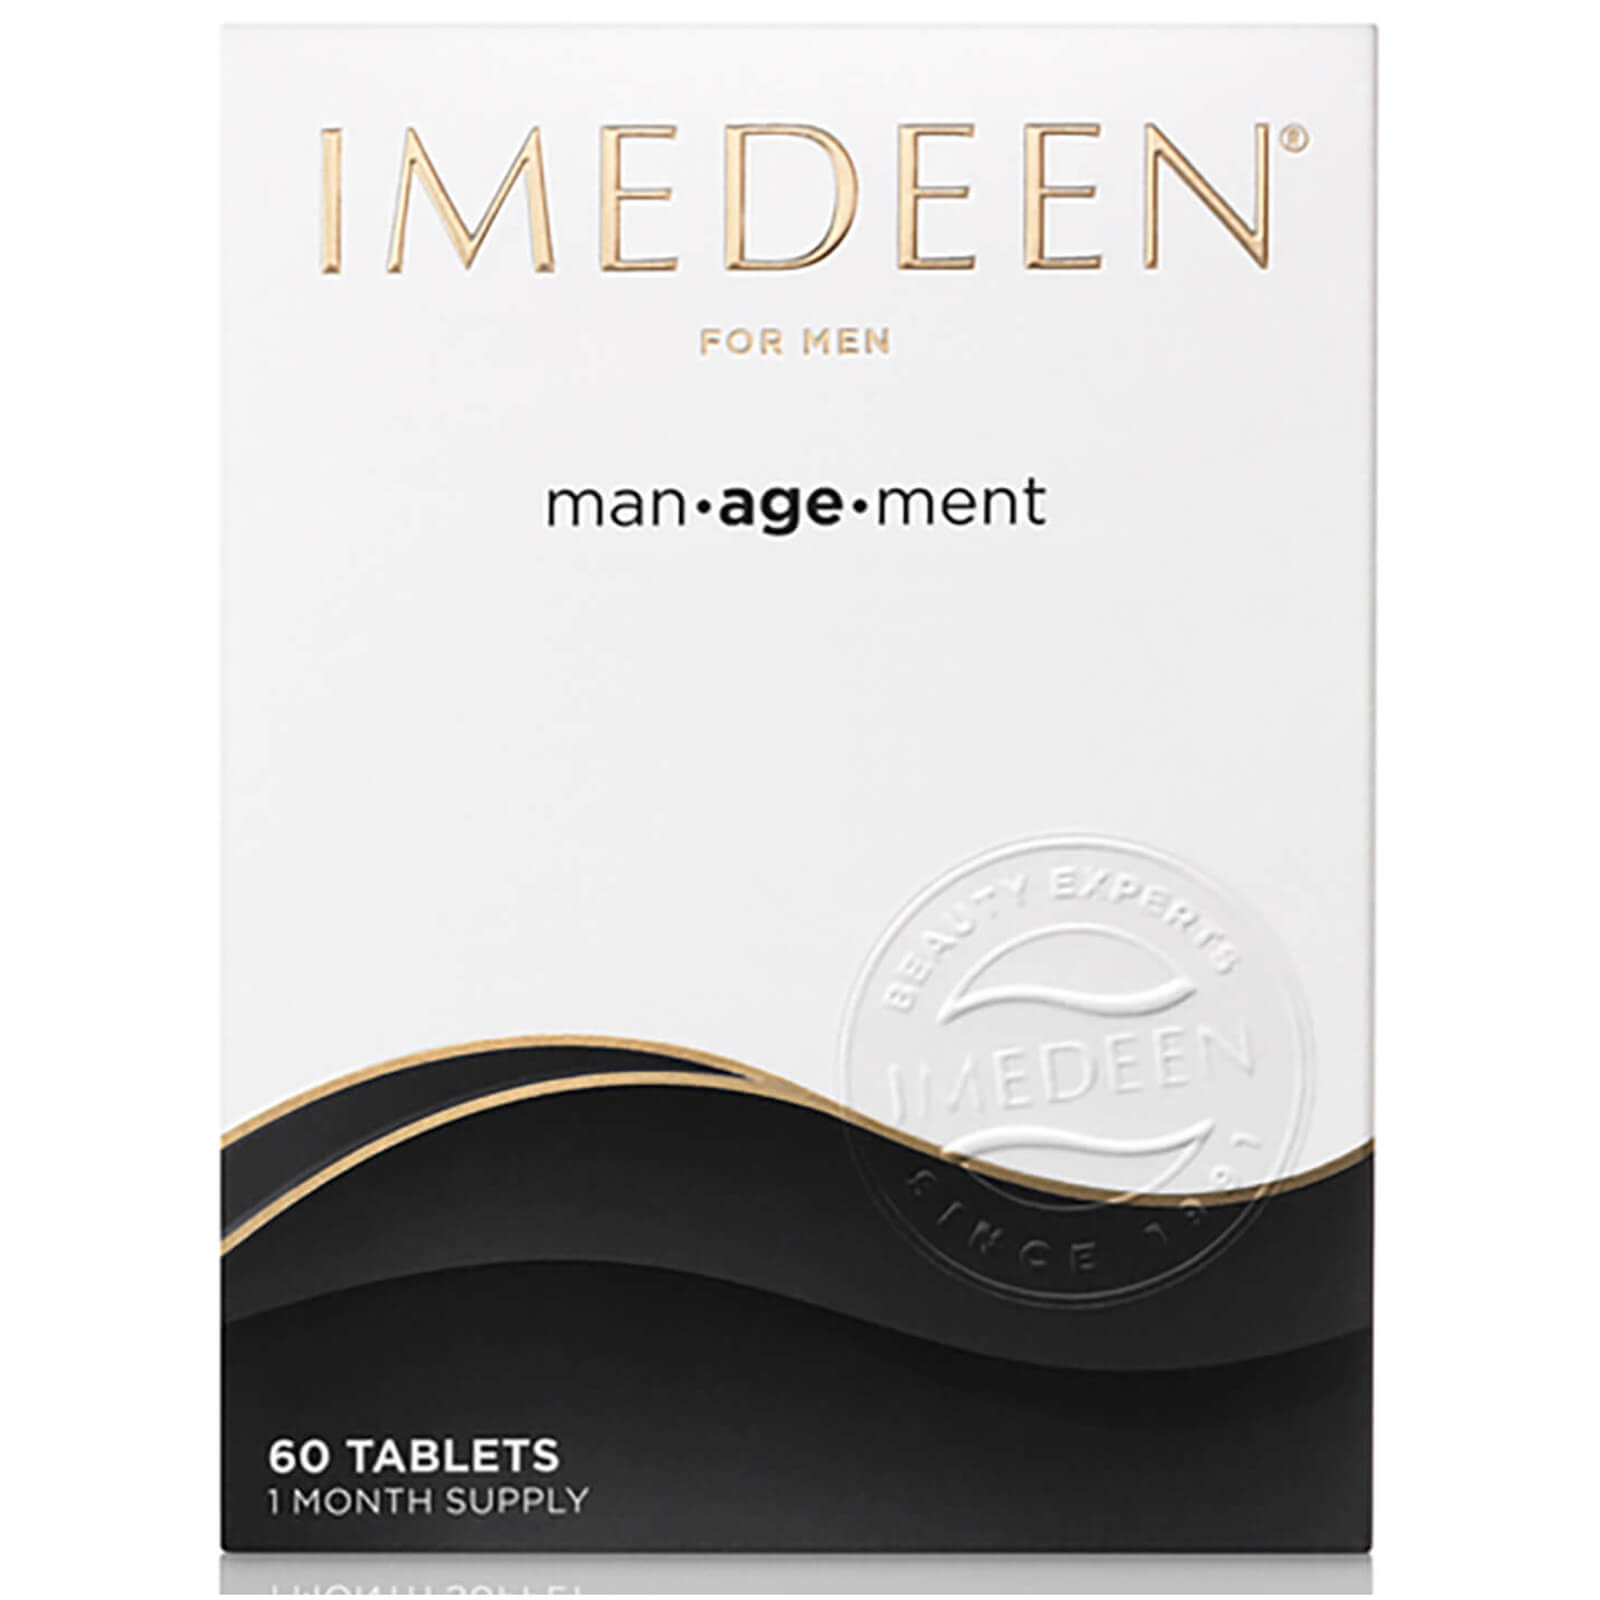 Imedeen Man-Age-Ment (60 Tablets) lookfantastic.com imagine